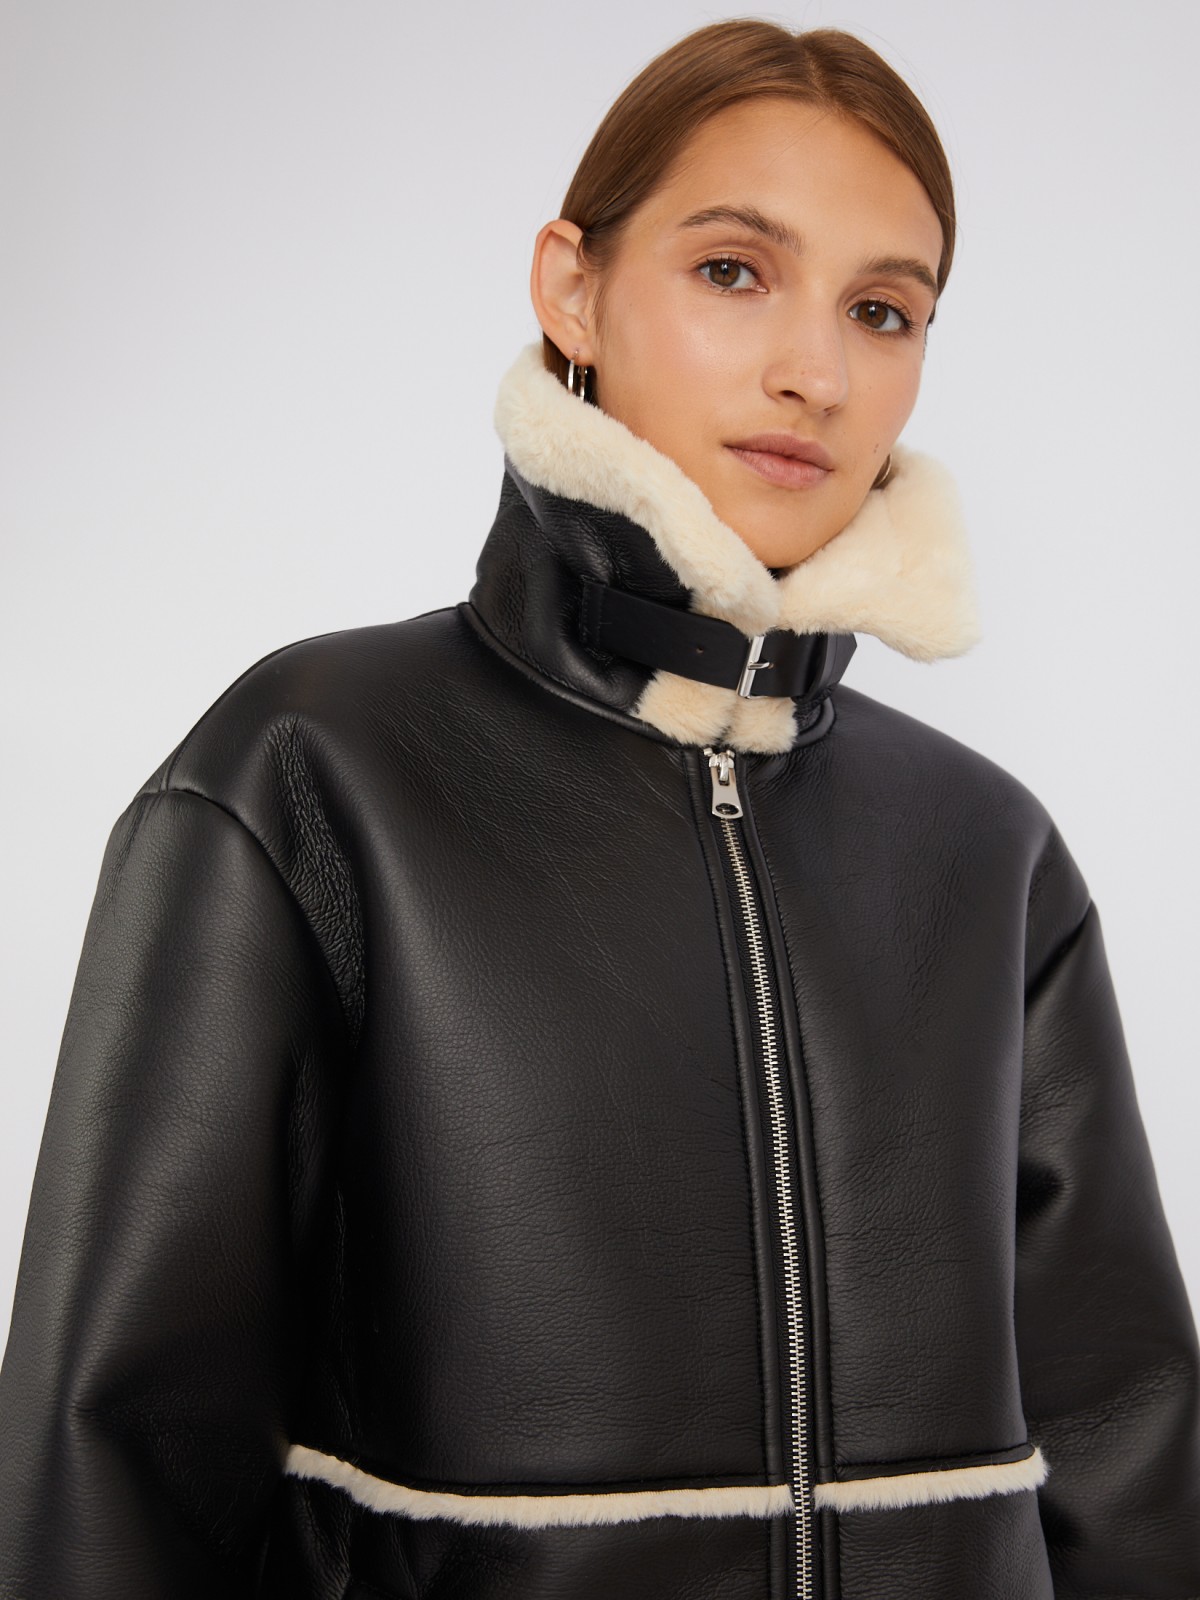 Длинное тёплое пальто-дублёнка из экокожи с искусственным мехом по подкладке zolla 023335550084, цвет черный, размер M - фото 5